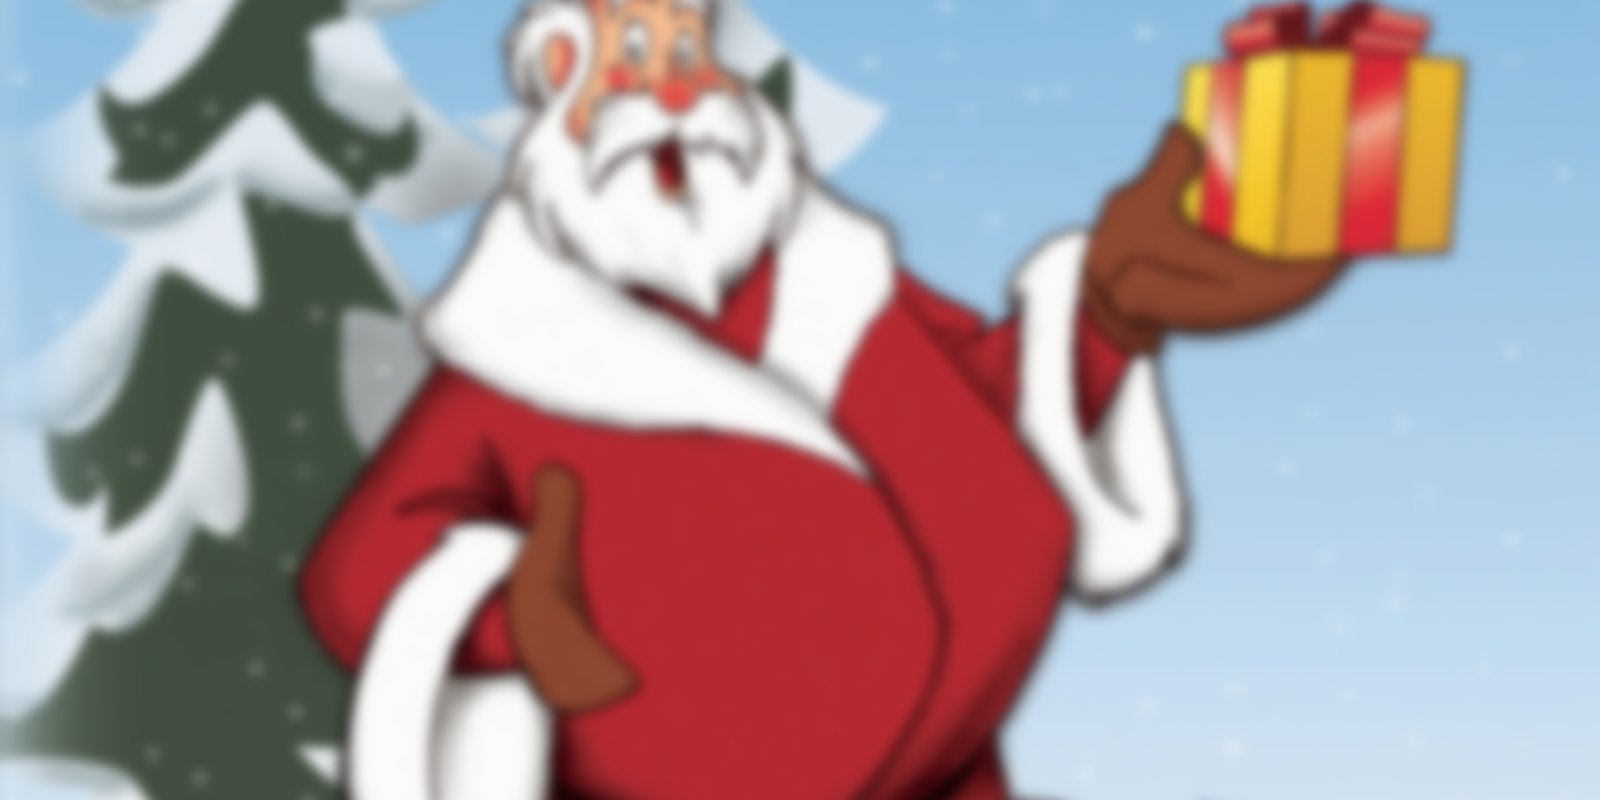 Die einzig wahre und wunderbare Geschichte von Santa Claus